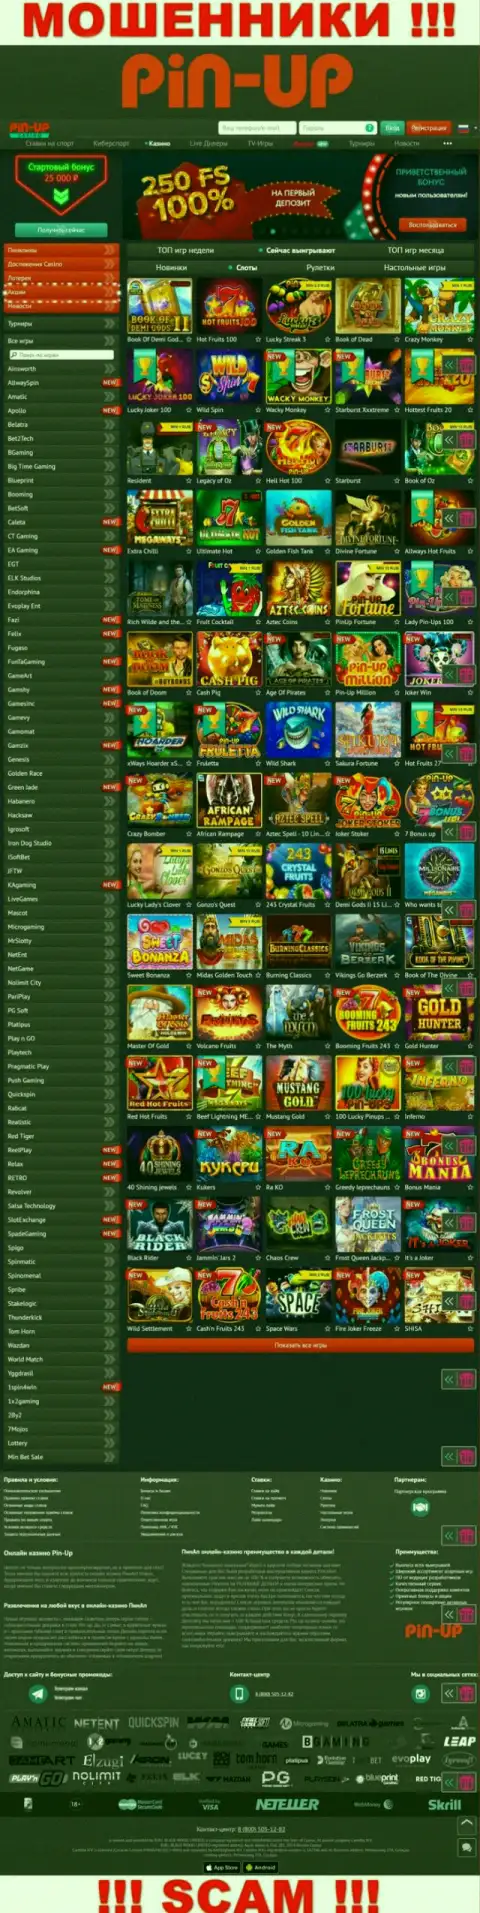 Pin-Up Casino - это официальный сайт мошенников Пин Ап Казино